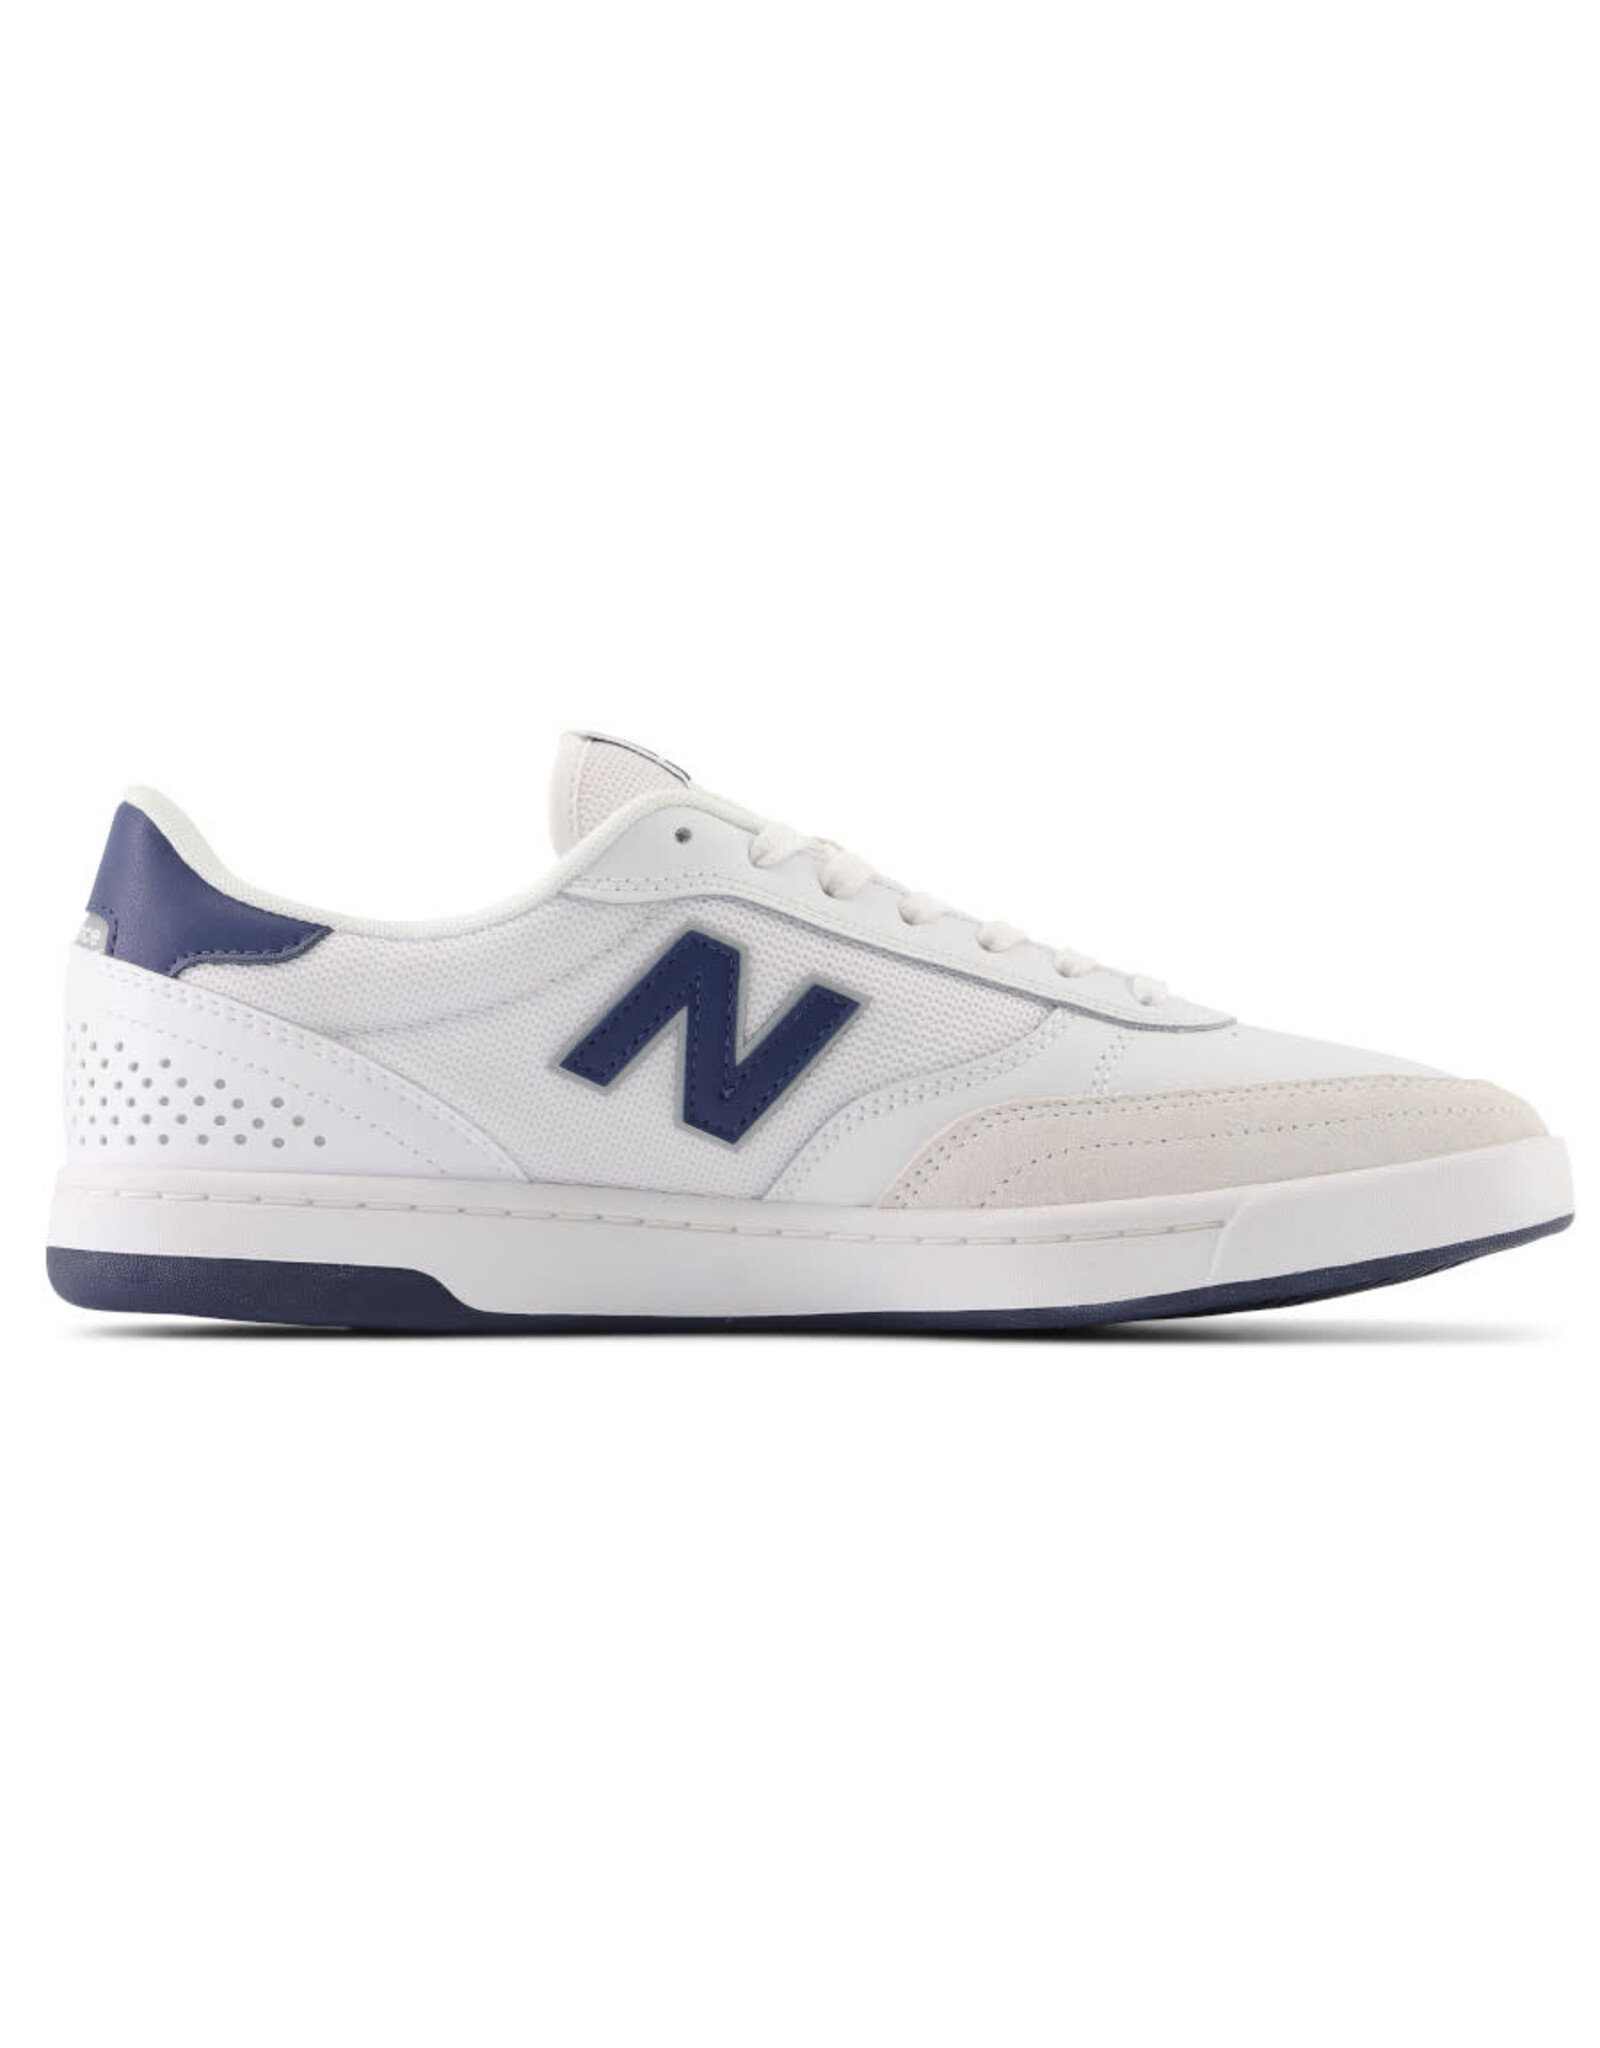 New Balance Numeric New Balance Numeric Shoe 440 Low (White/Blue)